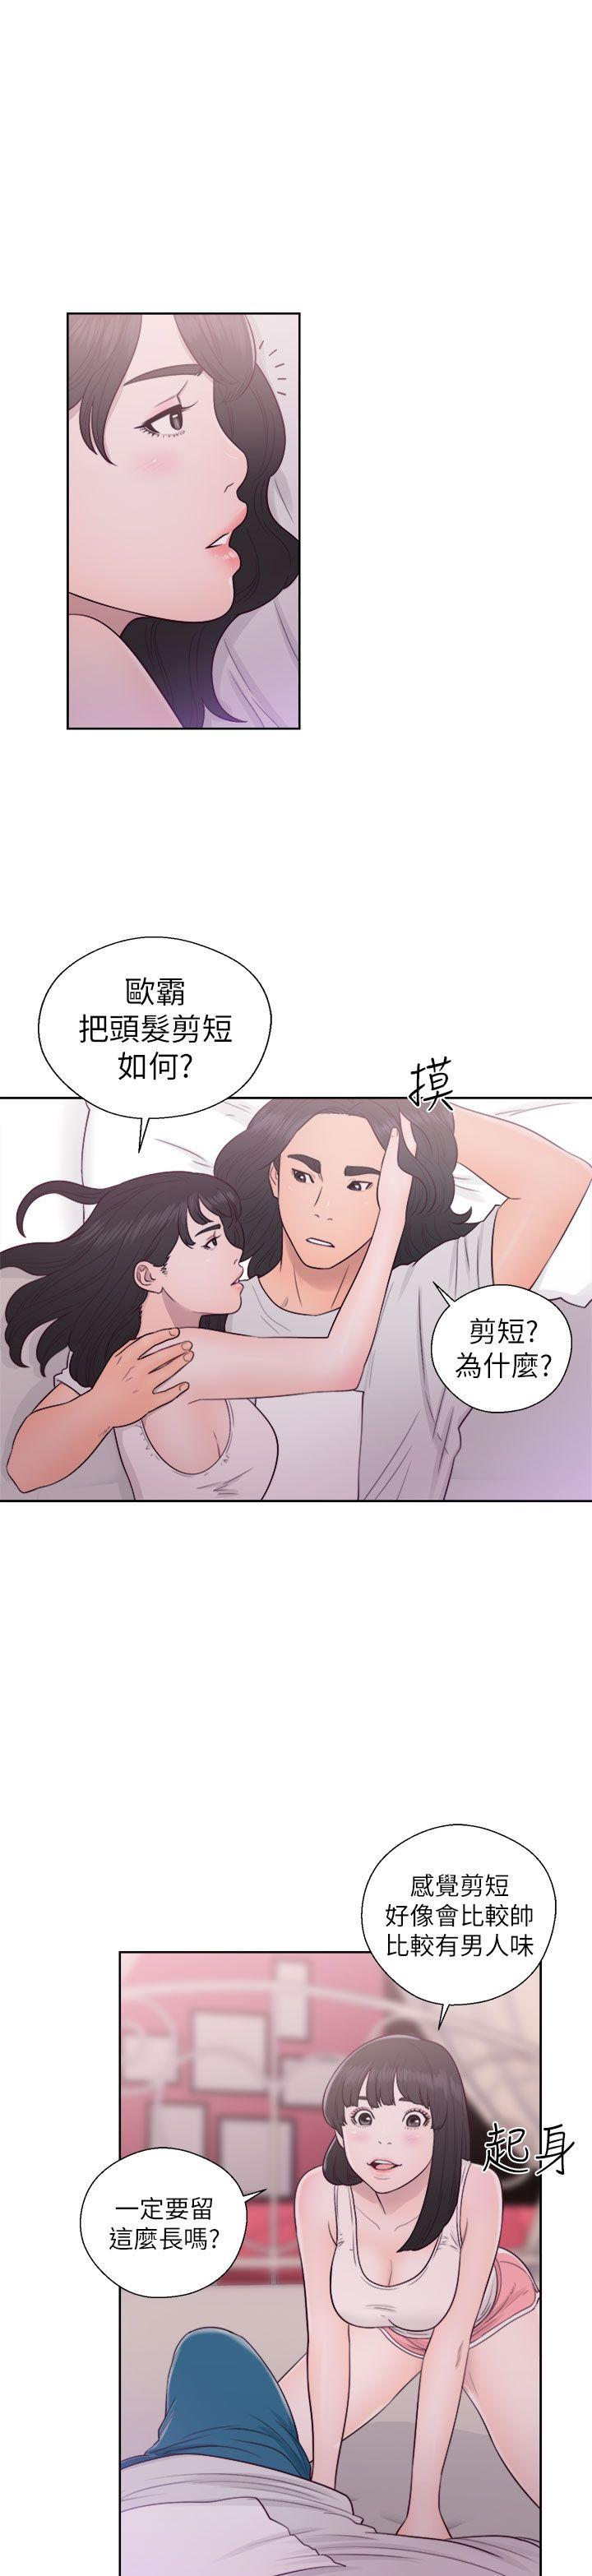 韩国污漫画 解禁:初始的快感 第44话 19